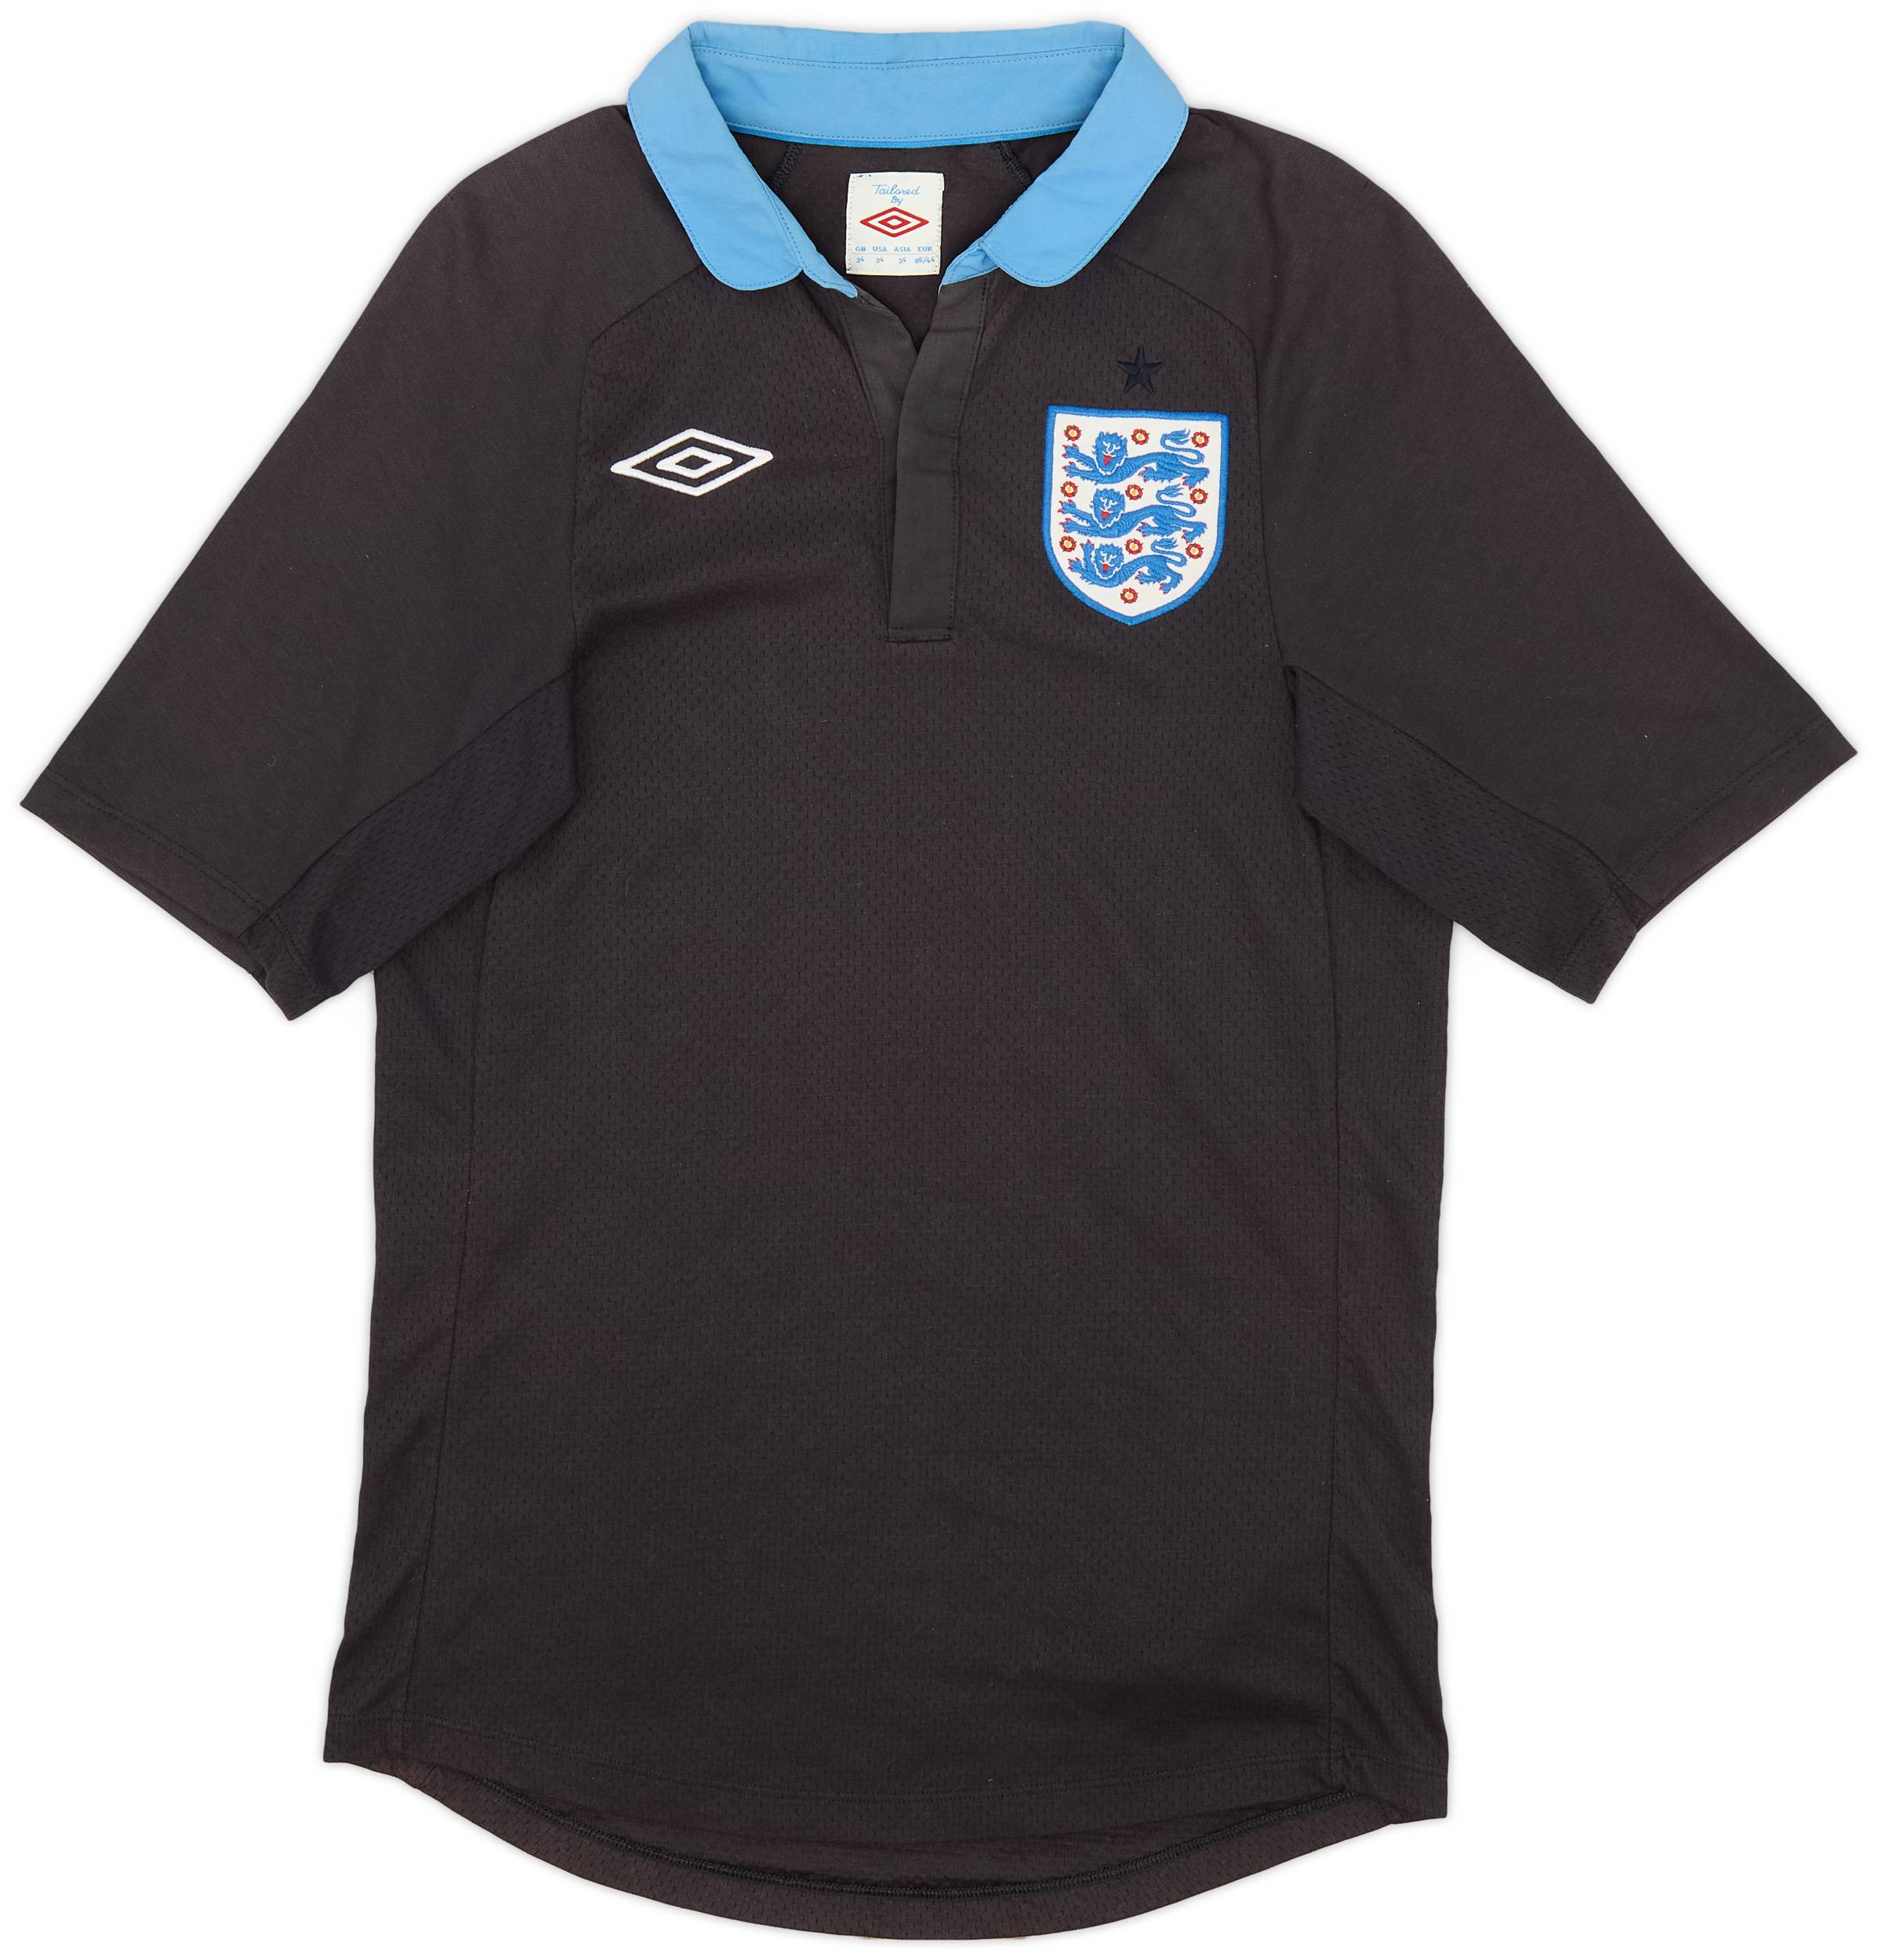 2011-12 England Away Shirt - 8/10 - (XS)